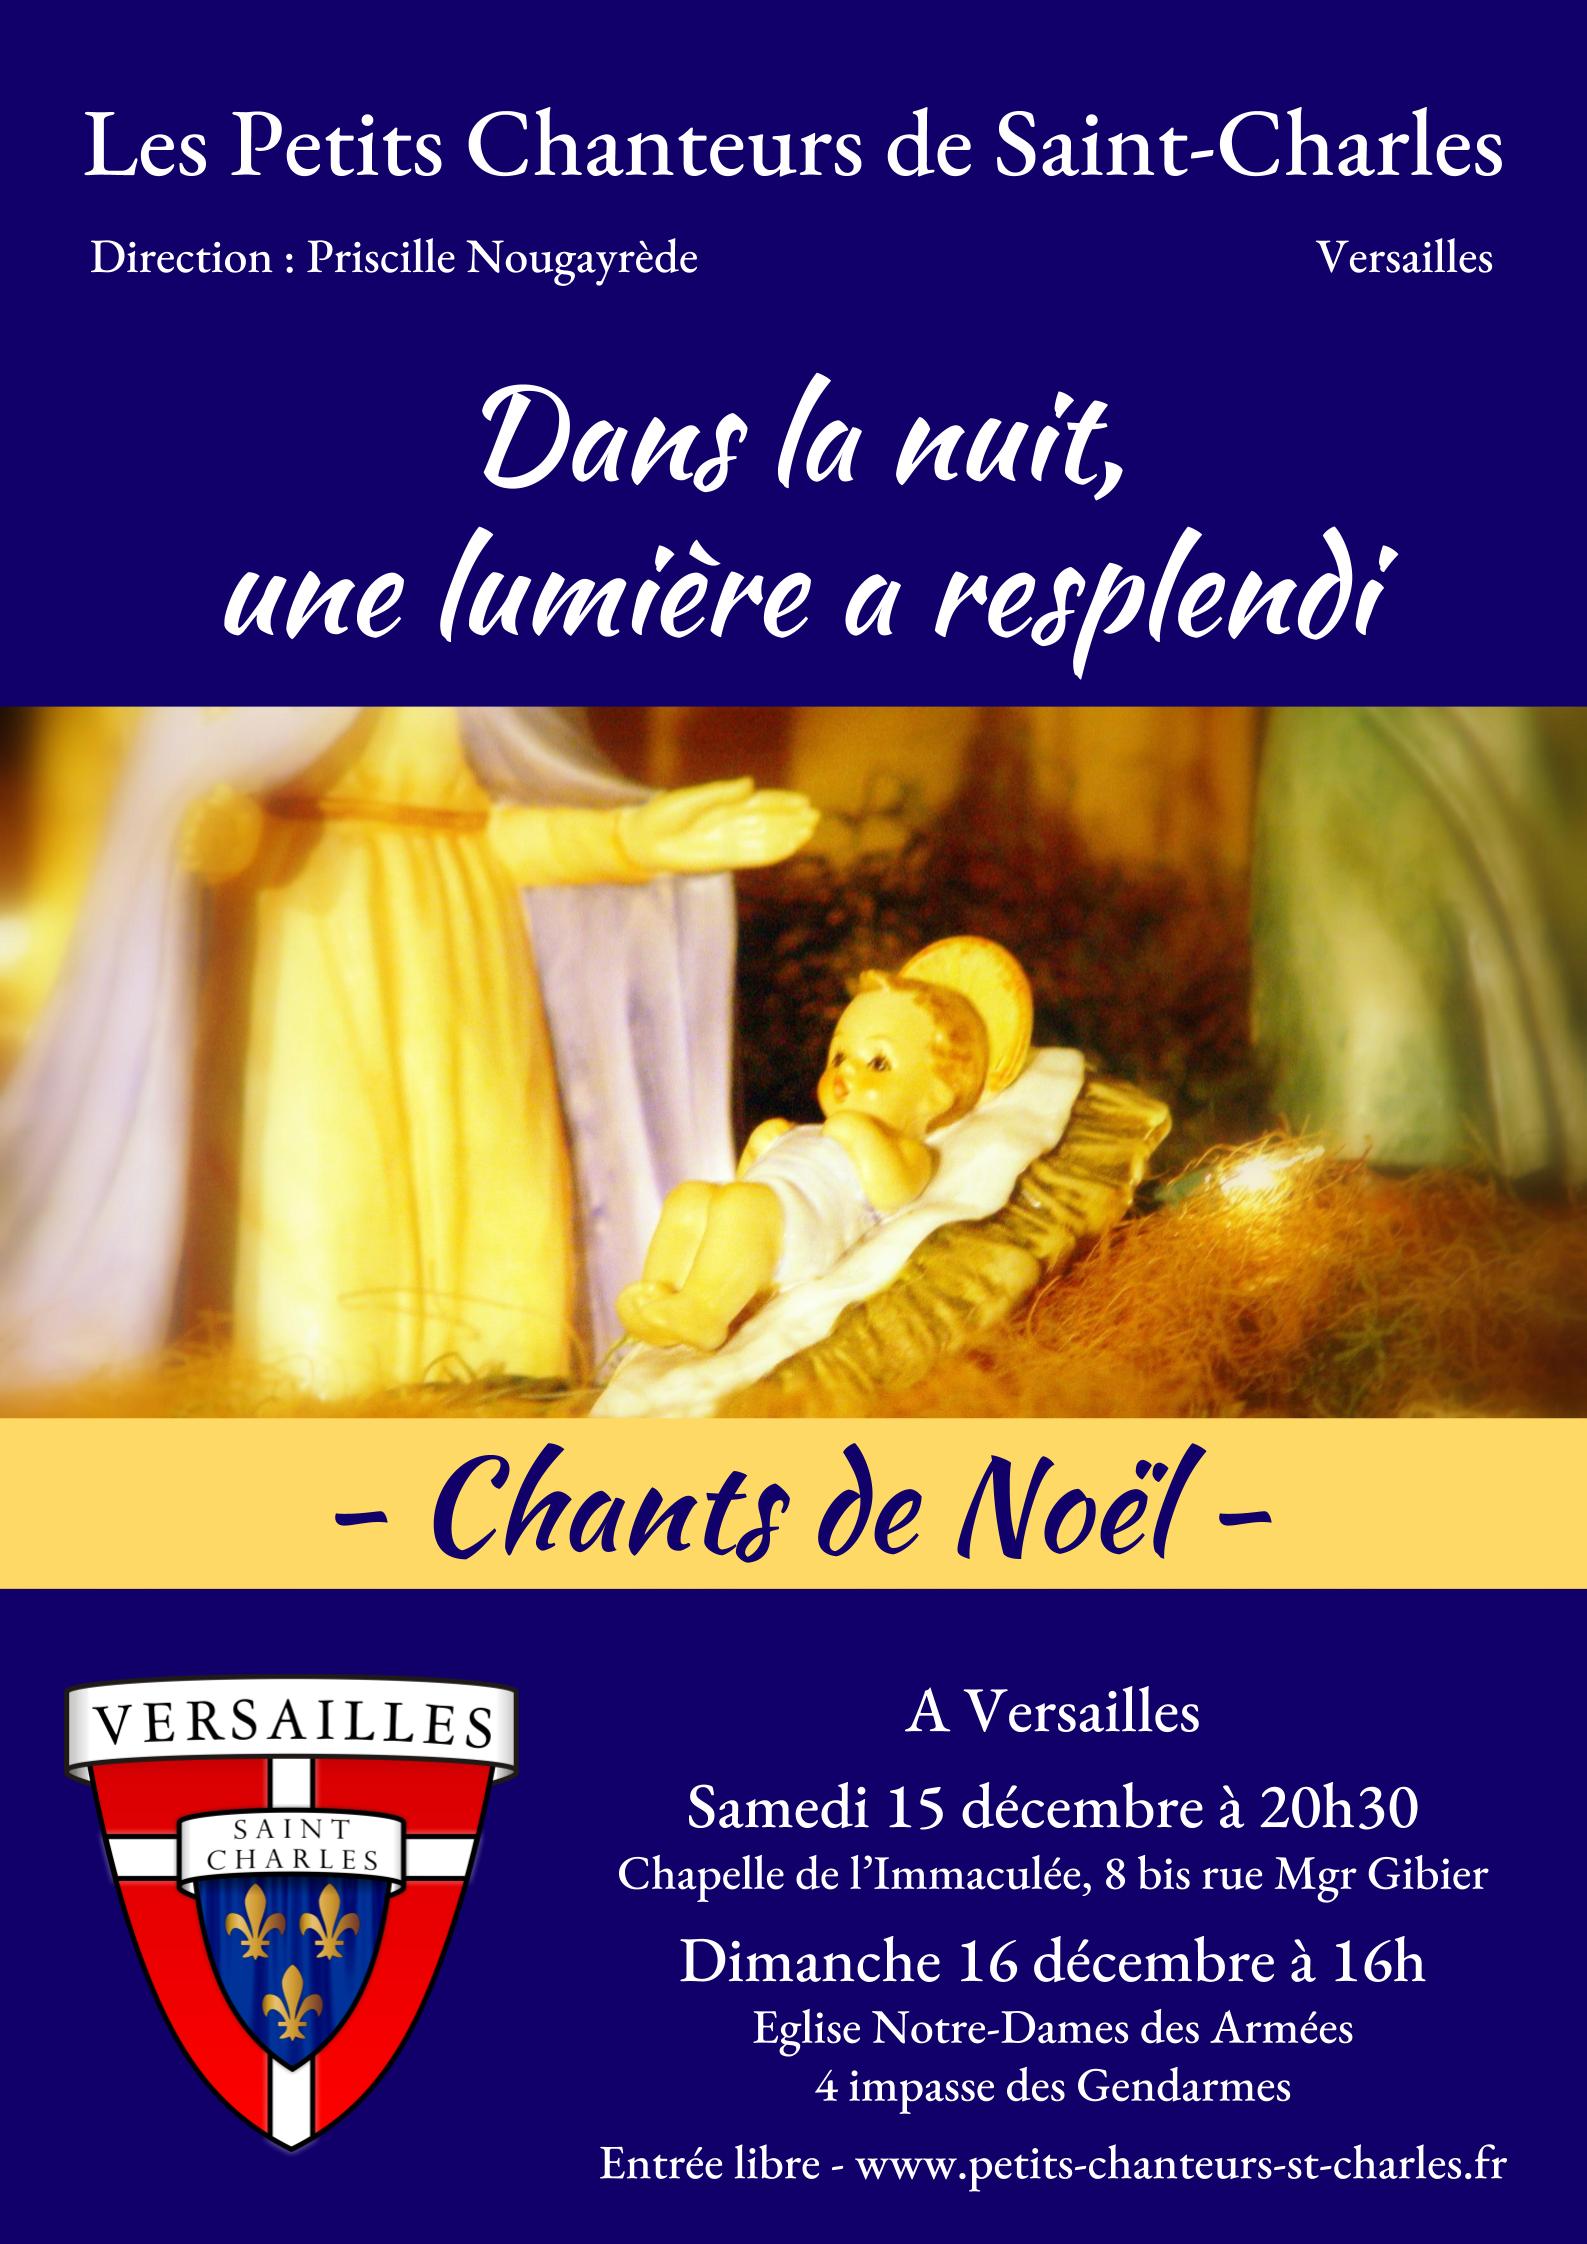 Concert de Noël des Petits Chanteurs de Saint-Charles les 15 & 16 décembre et messe de minuit le 24 décembre 2018 à Versailles (78)